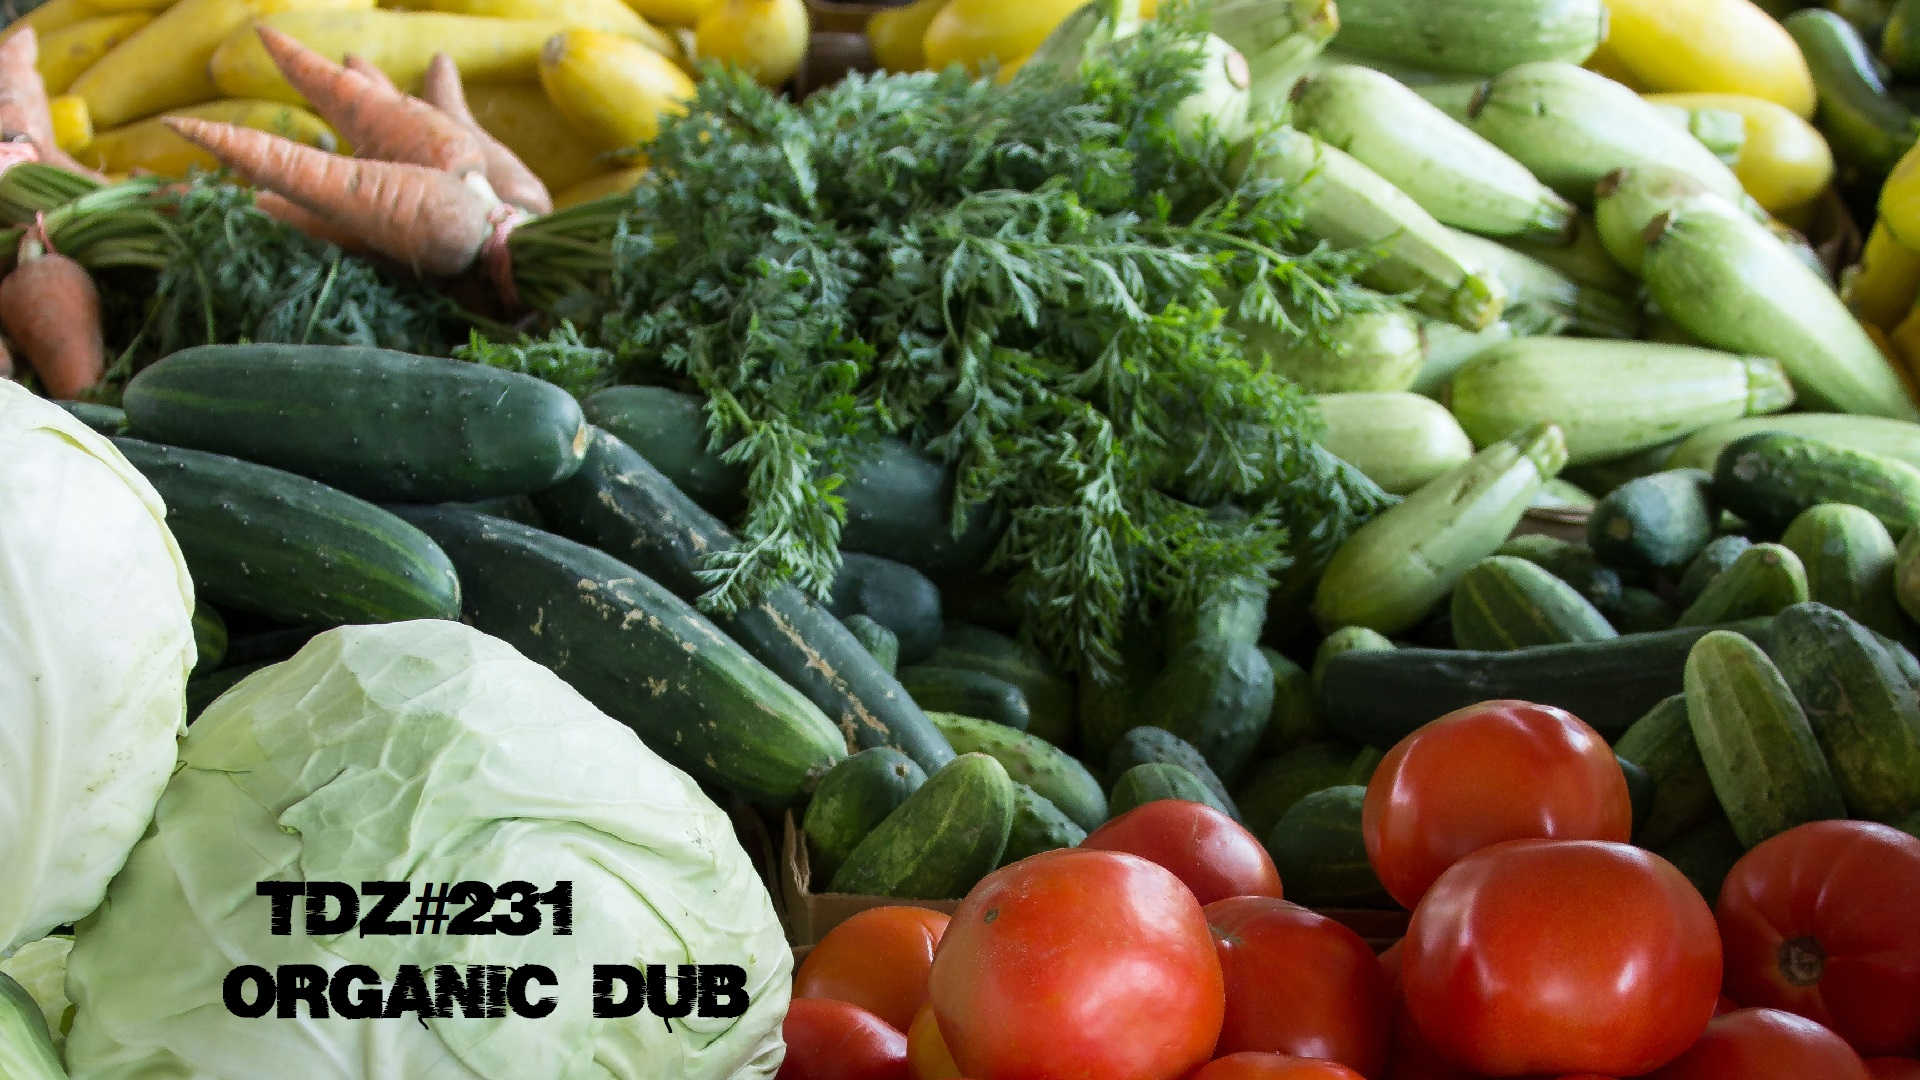 TDZ#231... Organic Dub.....